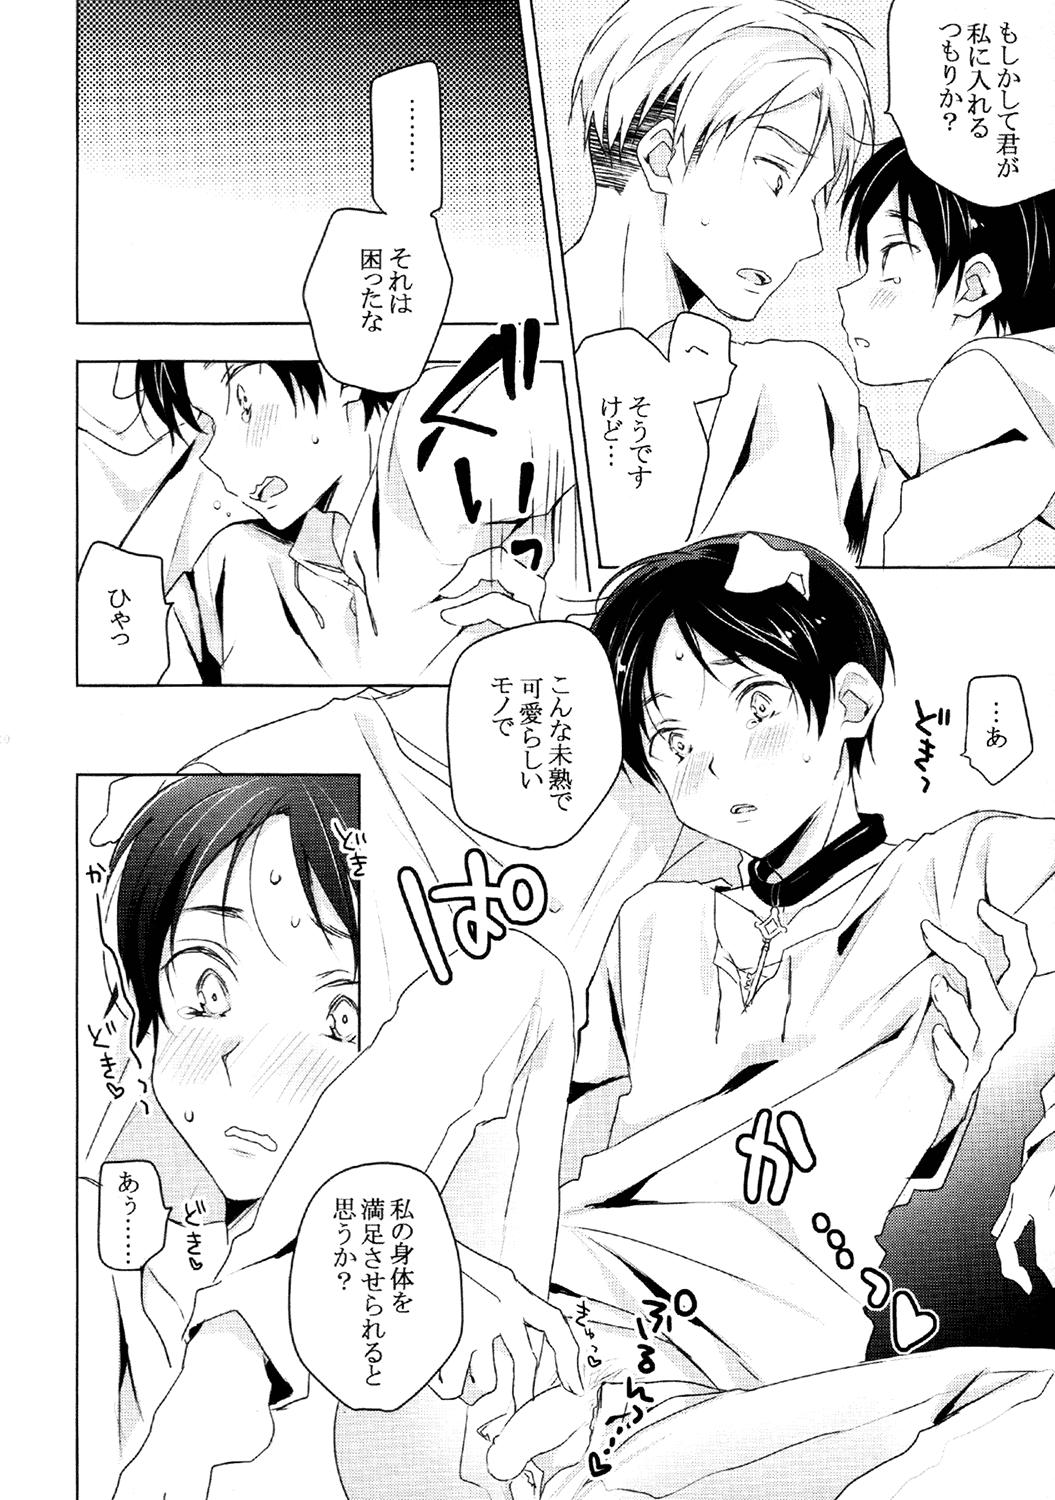 Punishment (HaruCC19) [hey you! (Non)] Ere-kun (Inu) wa Kyou mo Setsunai (Shingeki no Kyojin) - Shingeki no kyojin Cogiendo - Page 7